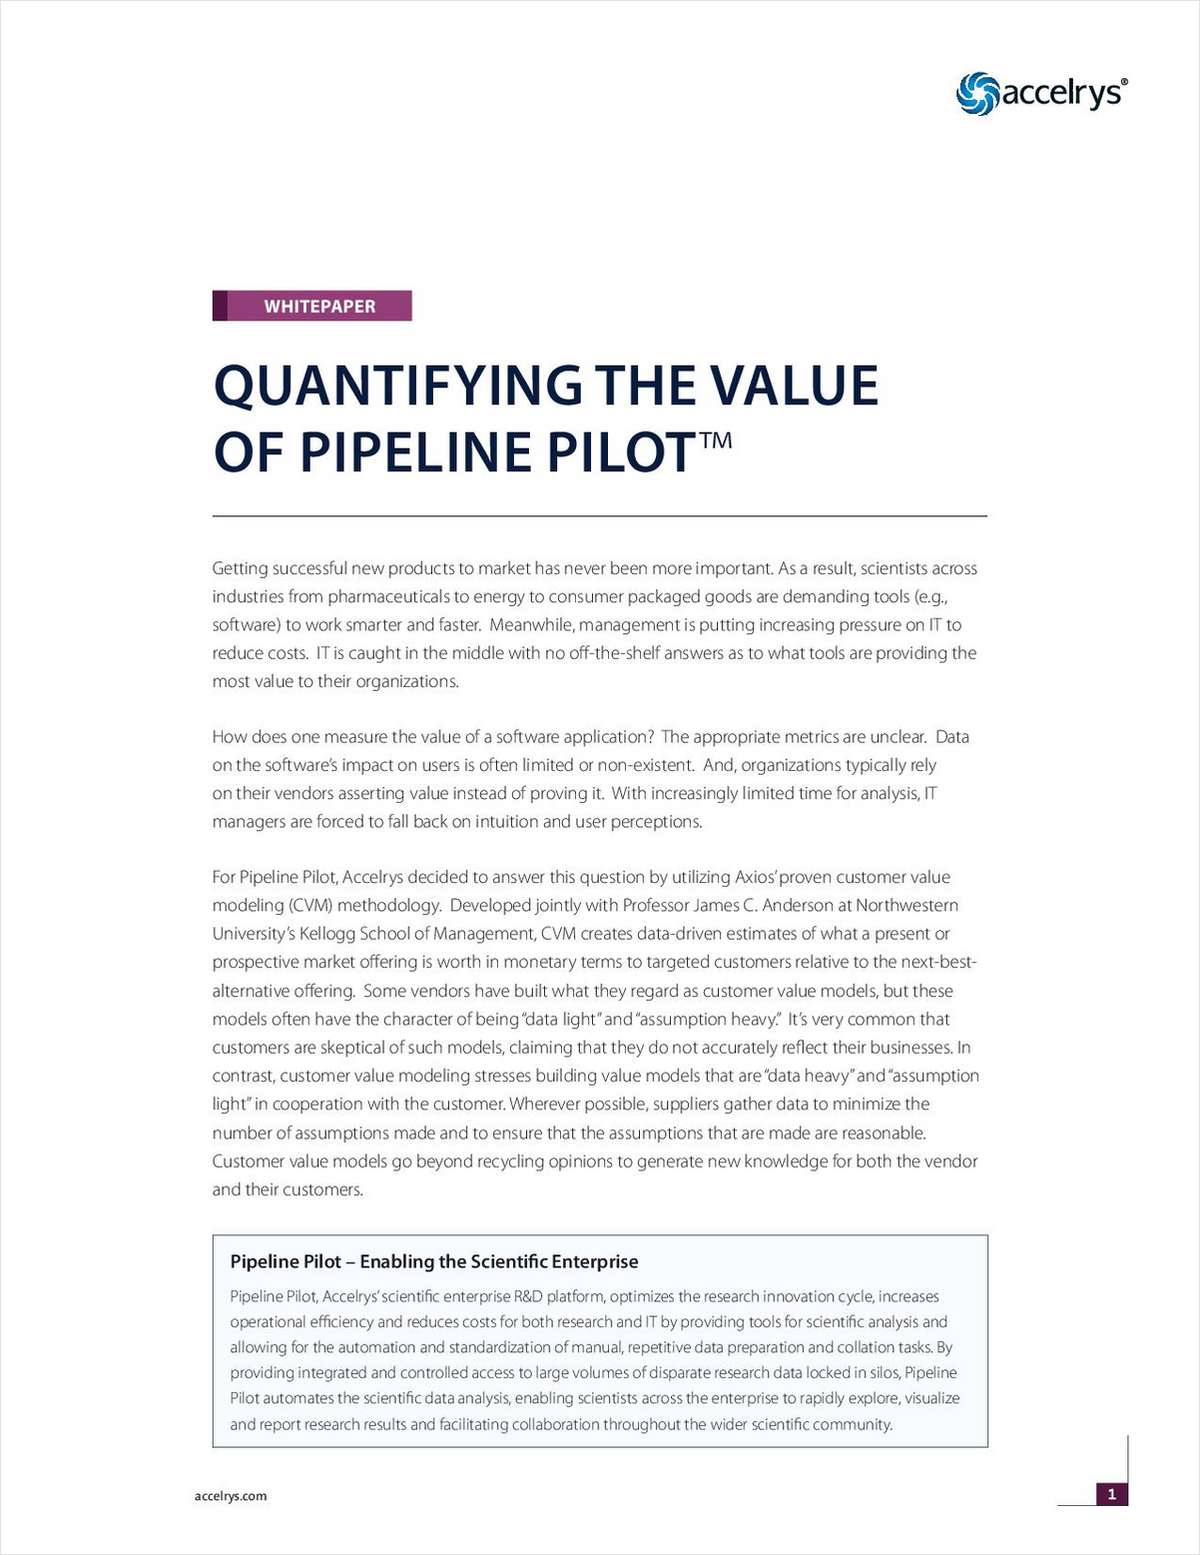 Quantifying the Value of Pipeline Pilot, the Accelrys Scientific Enterprise Platform